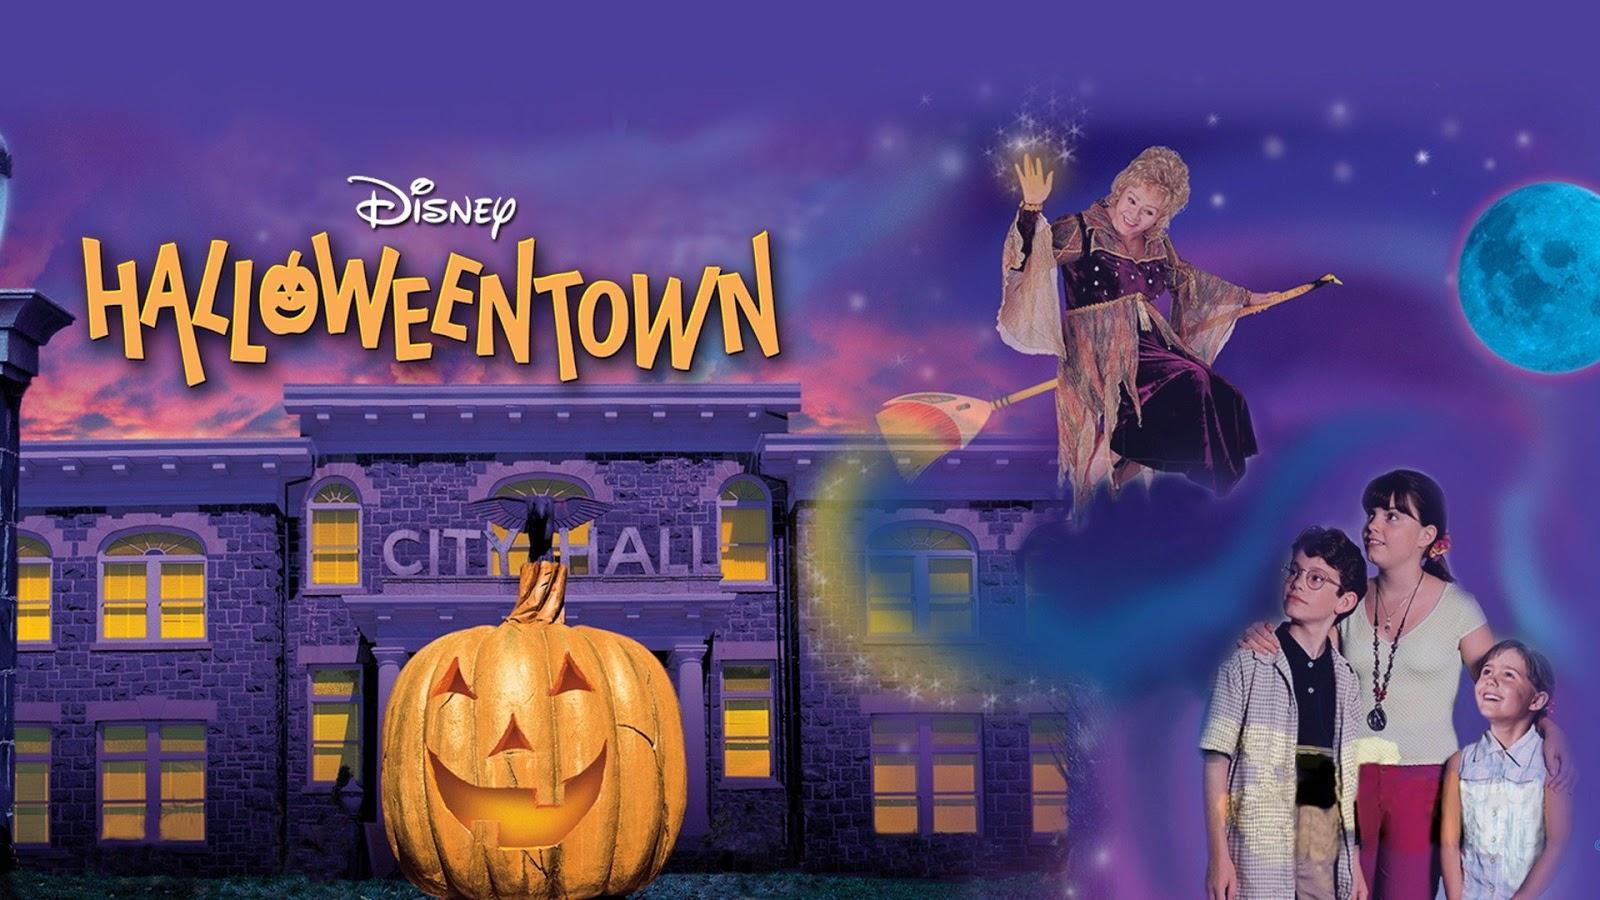 Halloweentown 1998